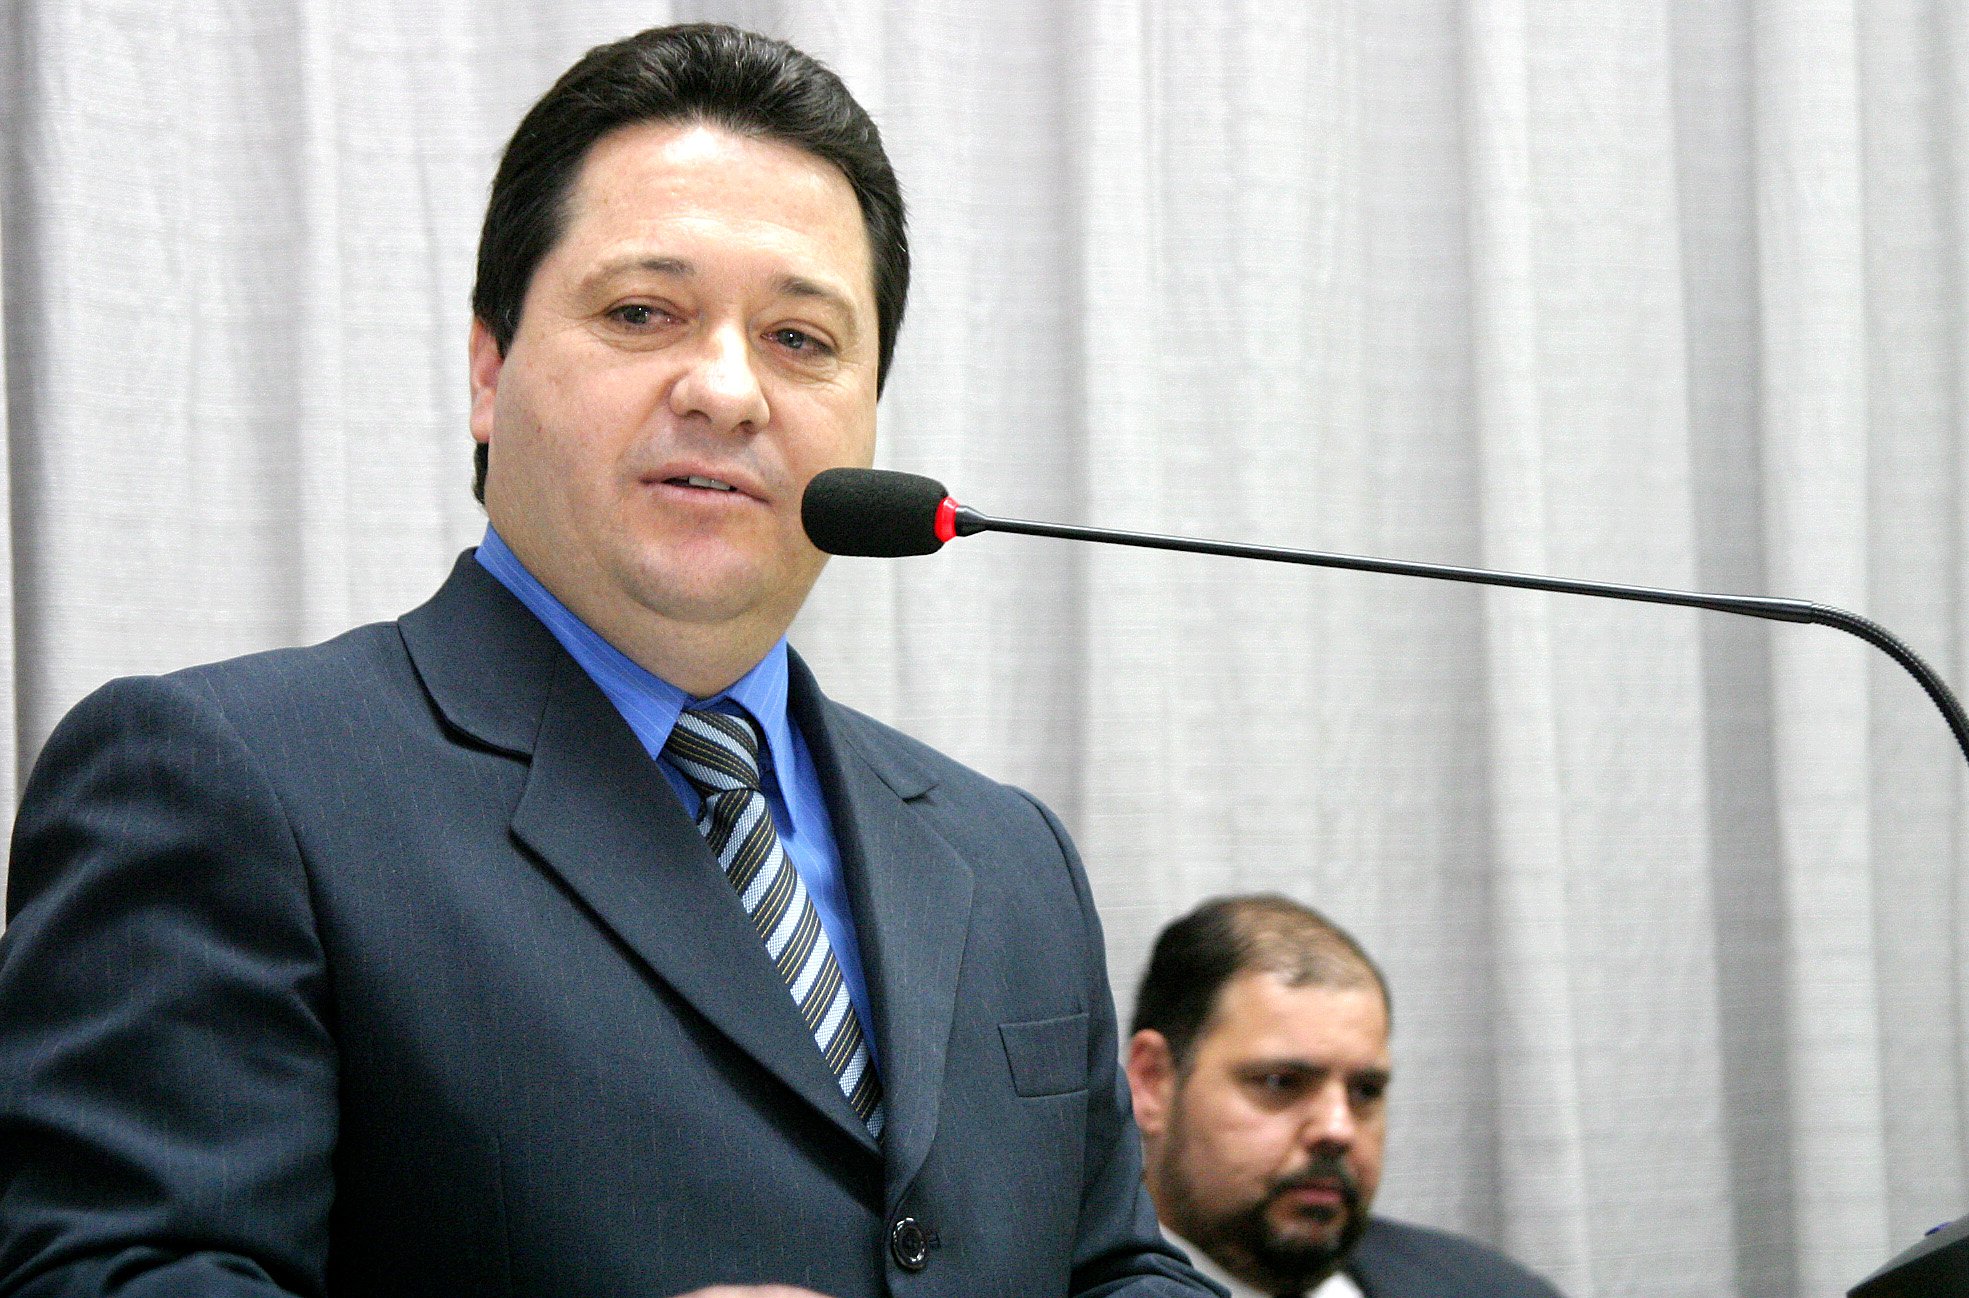 O presidente da Câmara de Apucarana, Mauro Bertoli (PTB), determinou à assessoria do Legislativo que atenda ao disposto na Lei Complementar 131/2009